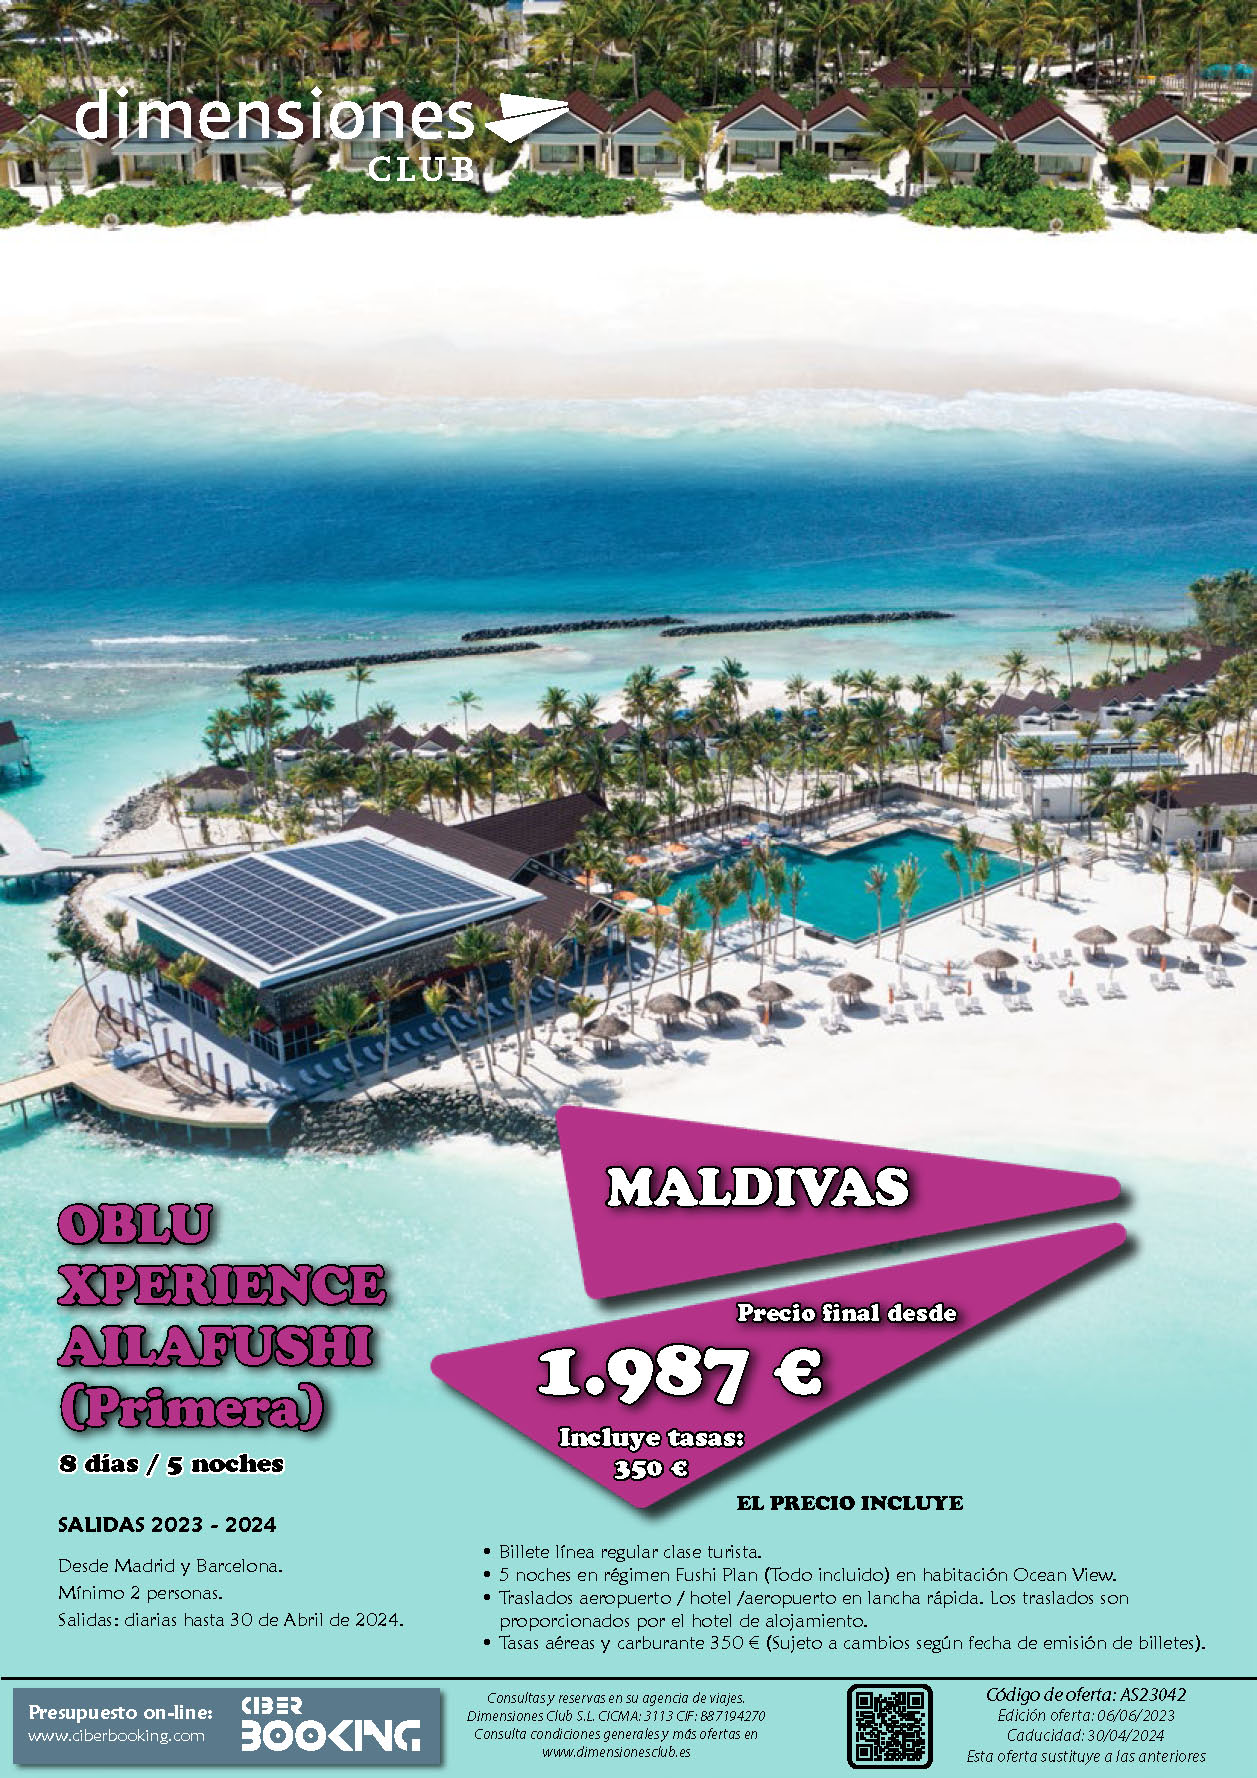 Oferta Dimensiones Club Estancia en Maldivas 8 dias Oblu Xperience Ailafushi Todo Incluido salidas 2023 a 2024 desde Madrid y Barcelona